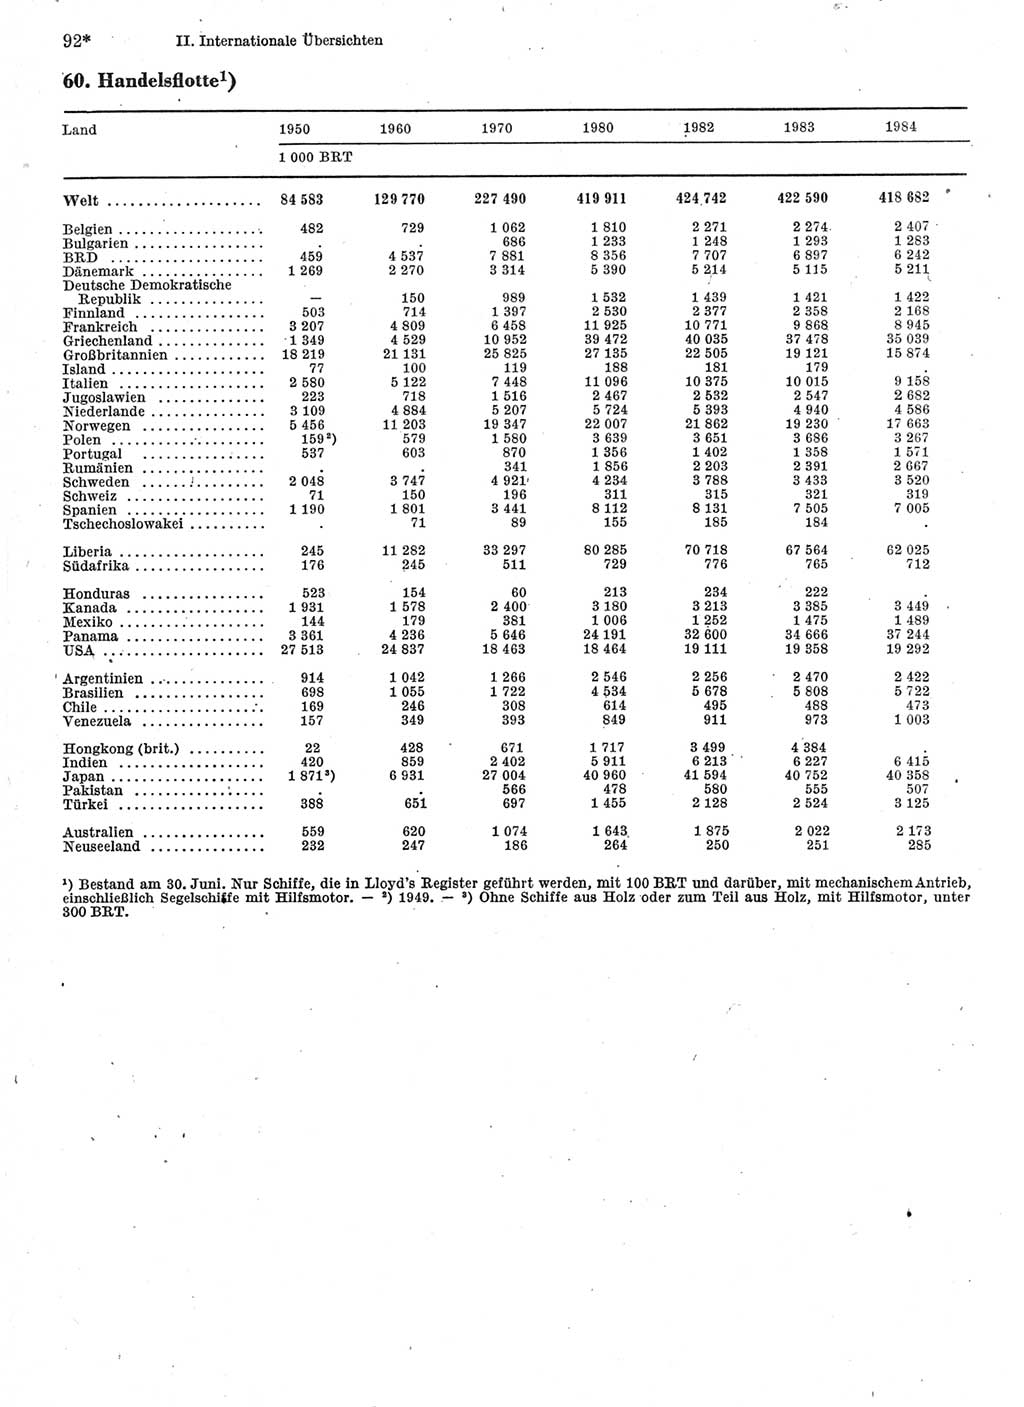 Statistisches Jahrbuch der Deutschen Demokratischen Republik (DDR) 1986, Seite 92 (Stat. Jb. DDR 1986, S. 92)